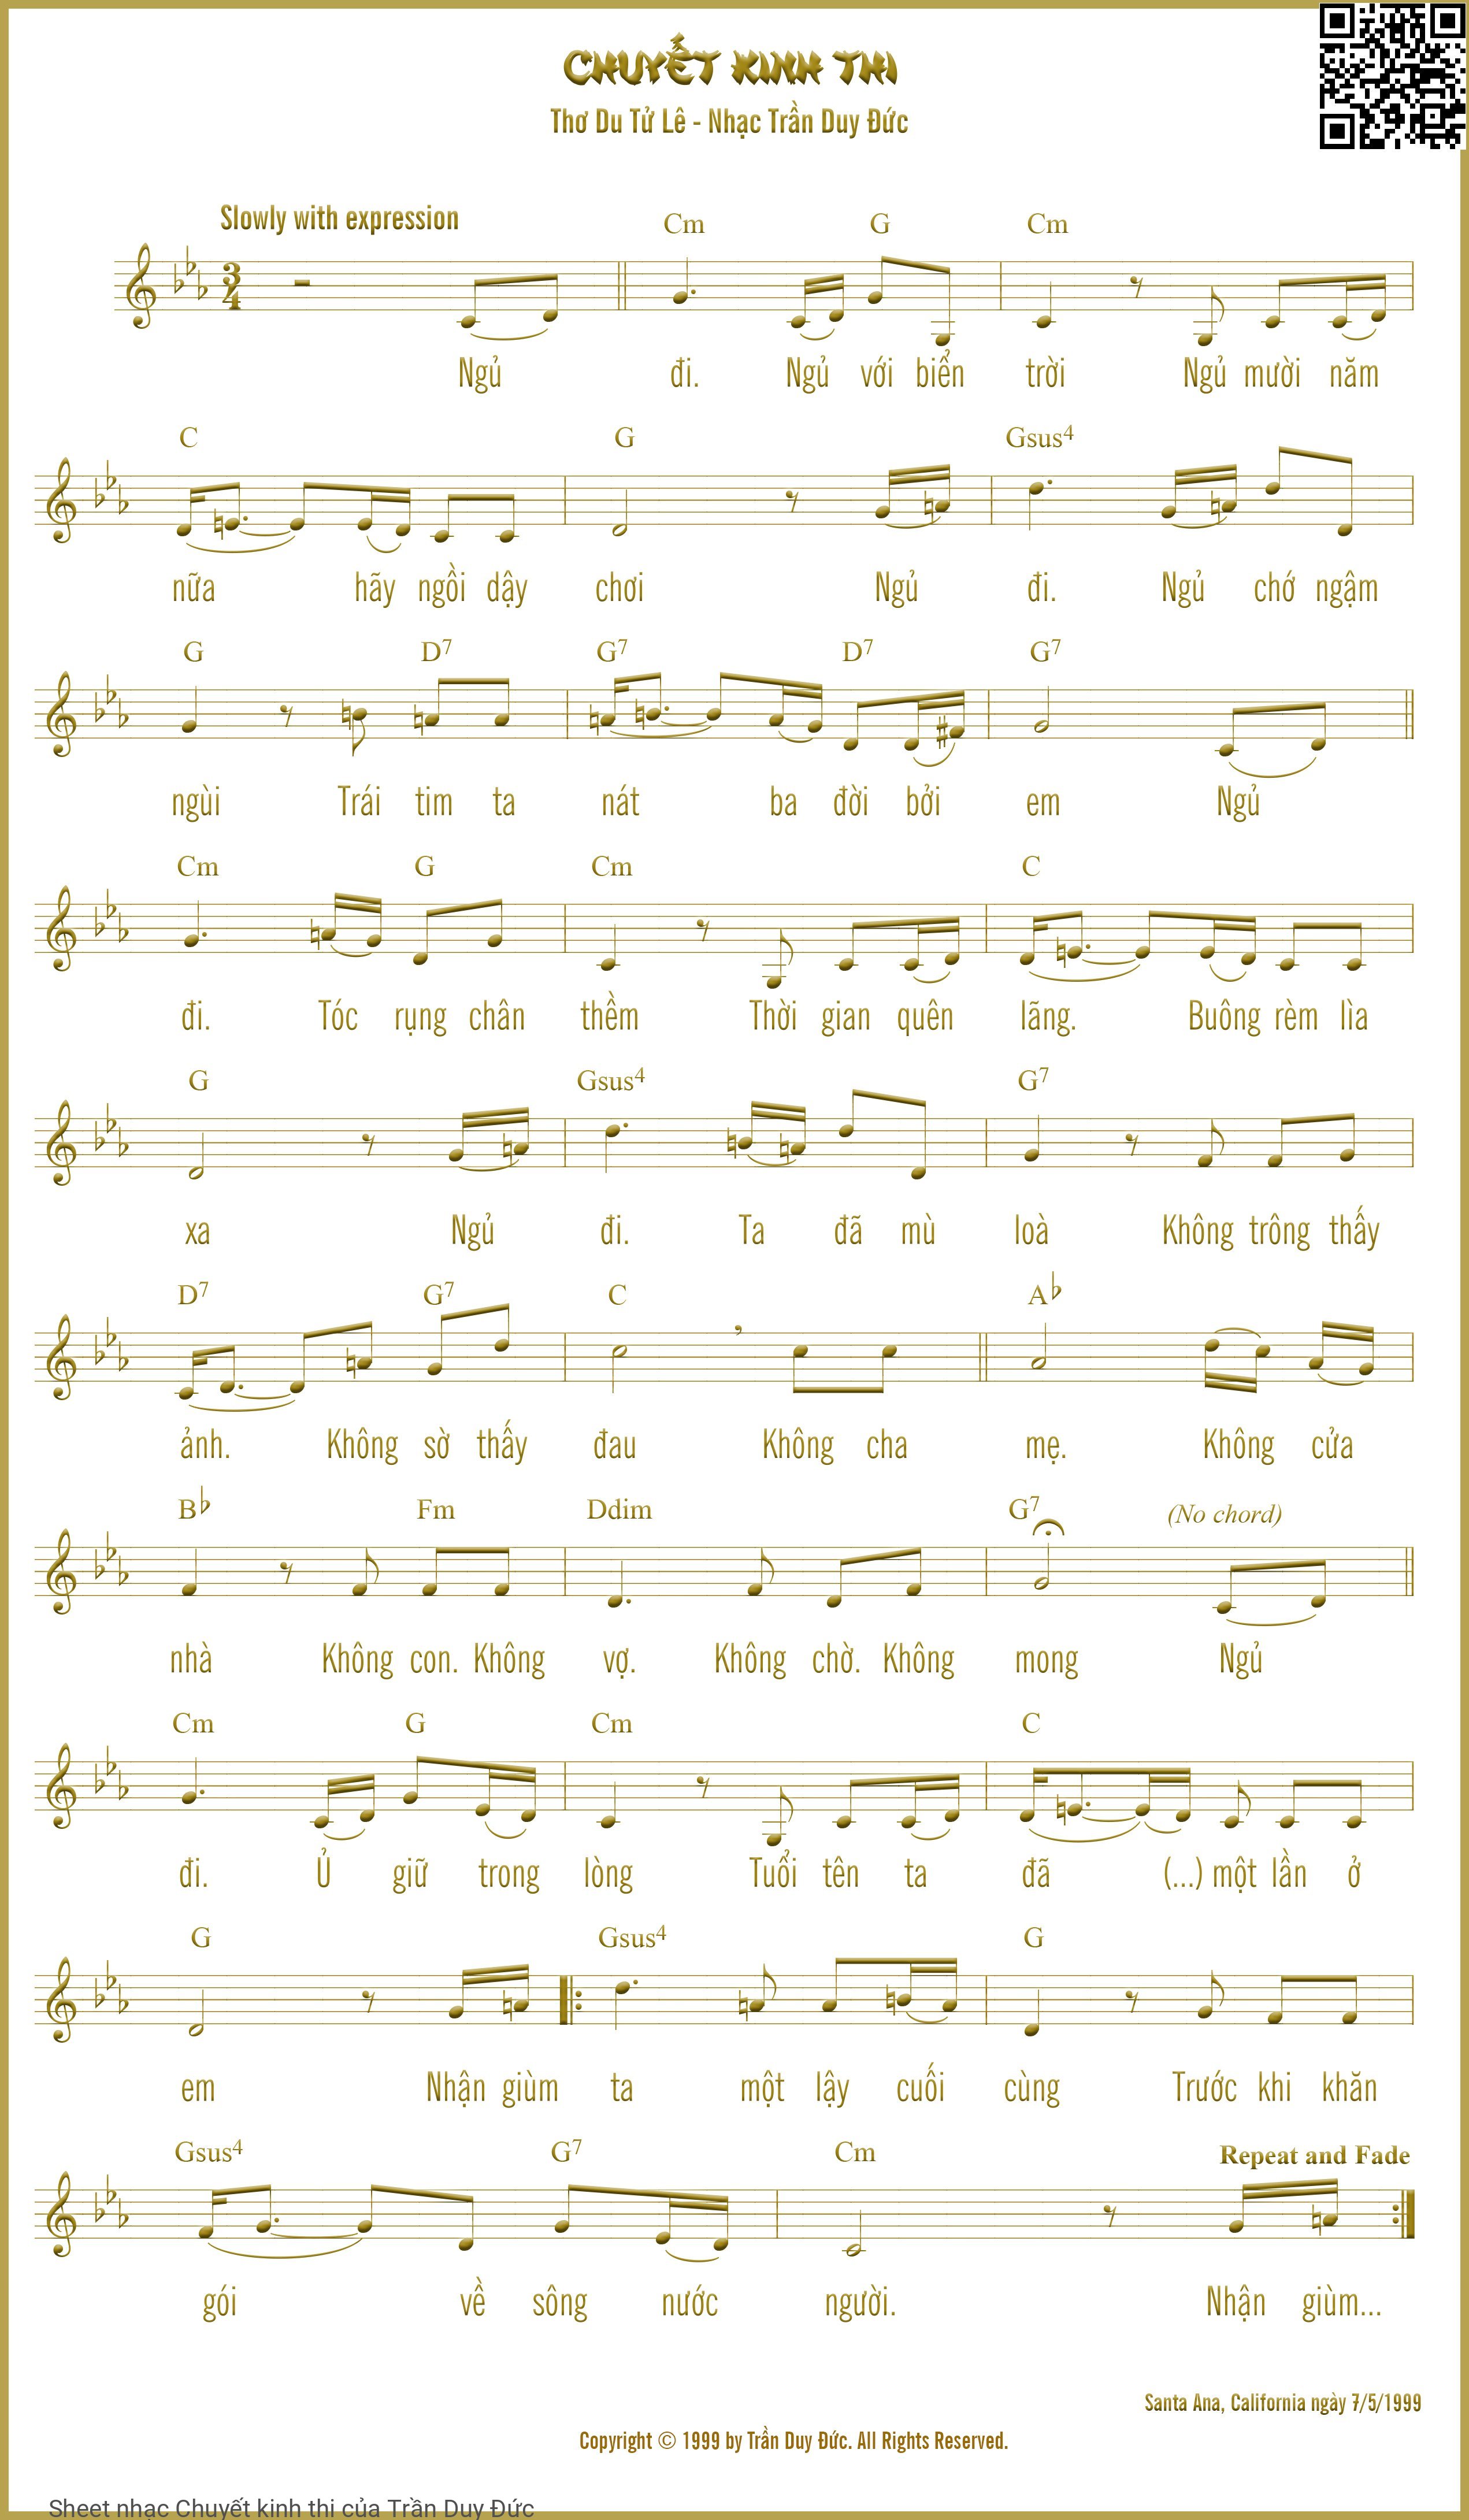 Sheet nhạc Chuyết kinh thi - Trần Duy Đức